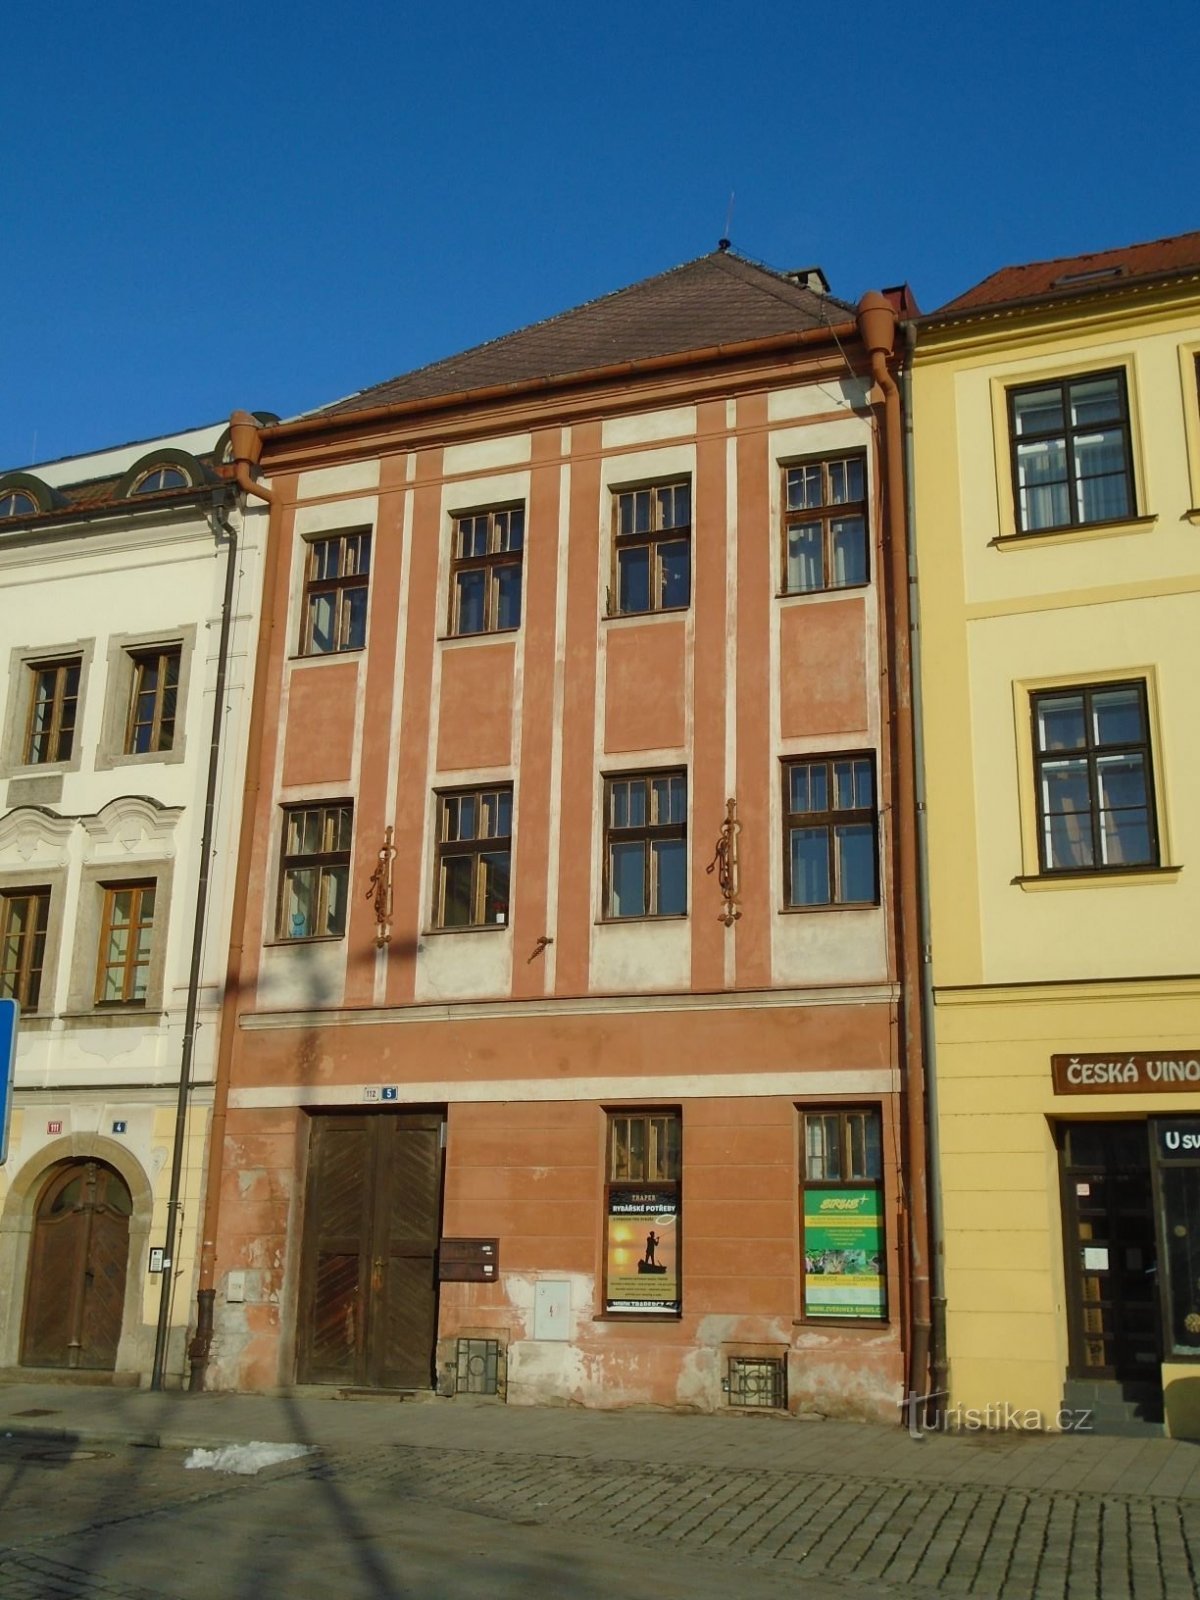 Malé náměstí br. 112 (Hradec Králové, 30.1.2019. travnja XNUMX.)